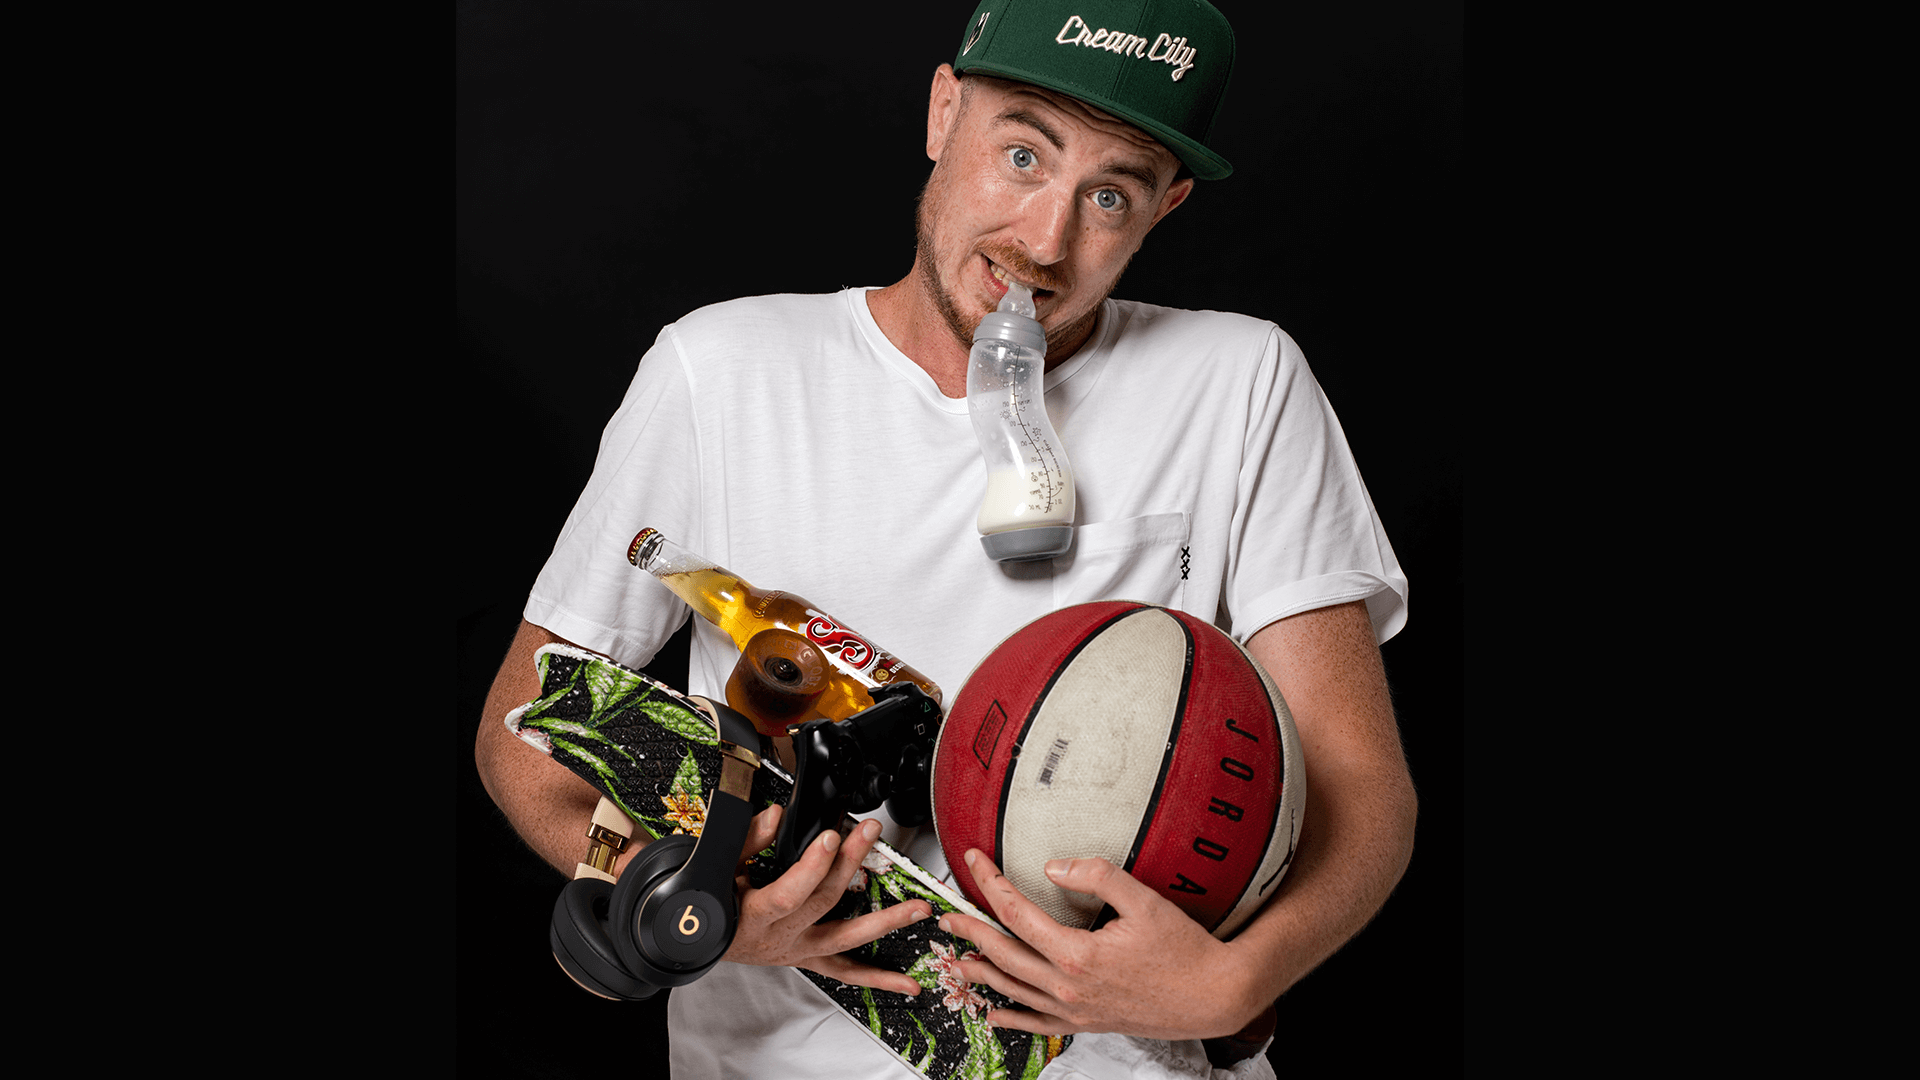 Davey Turnhout met veel attributen in zijn handen, zoals een basketbal, babyfles en skateboard.